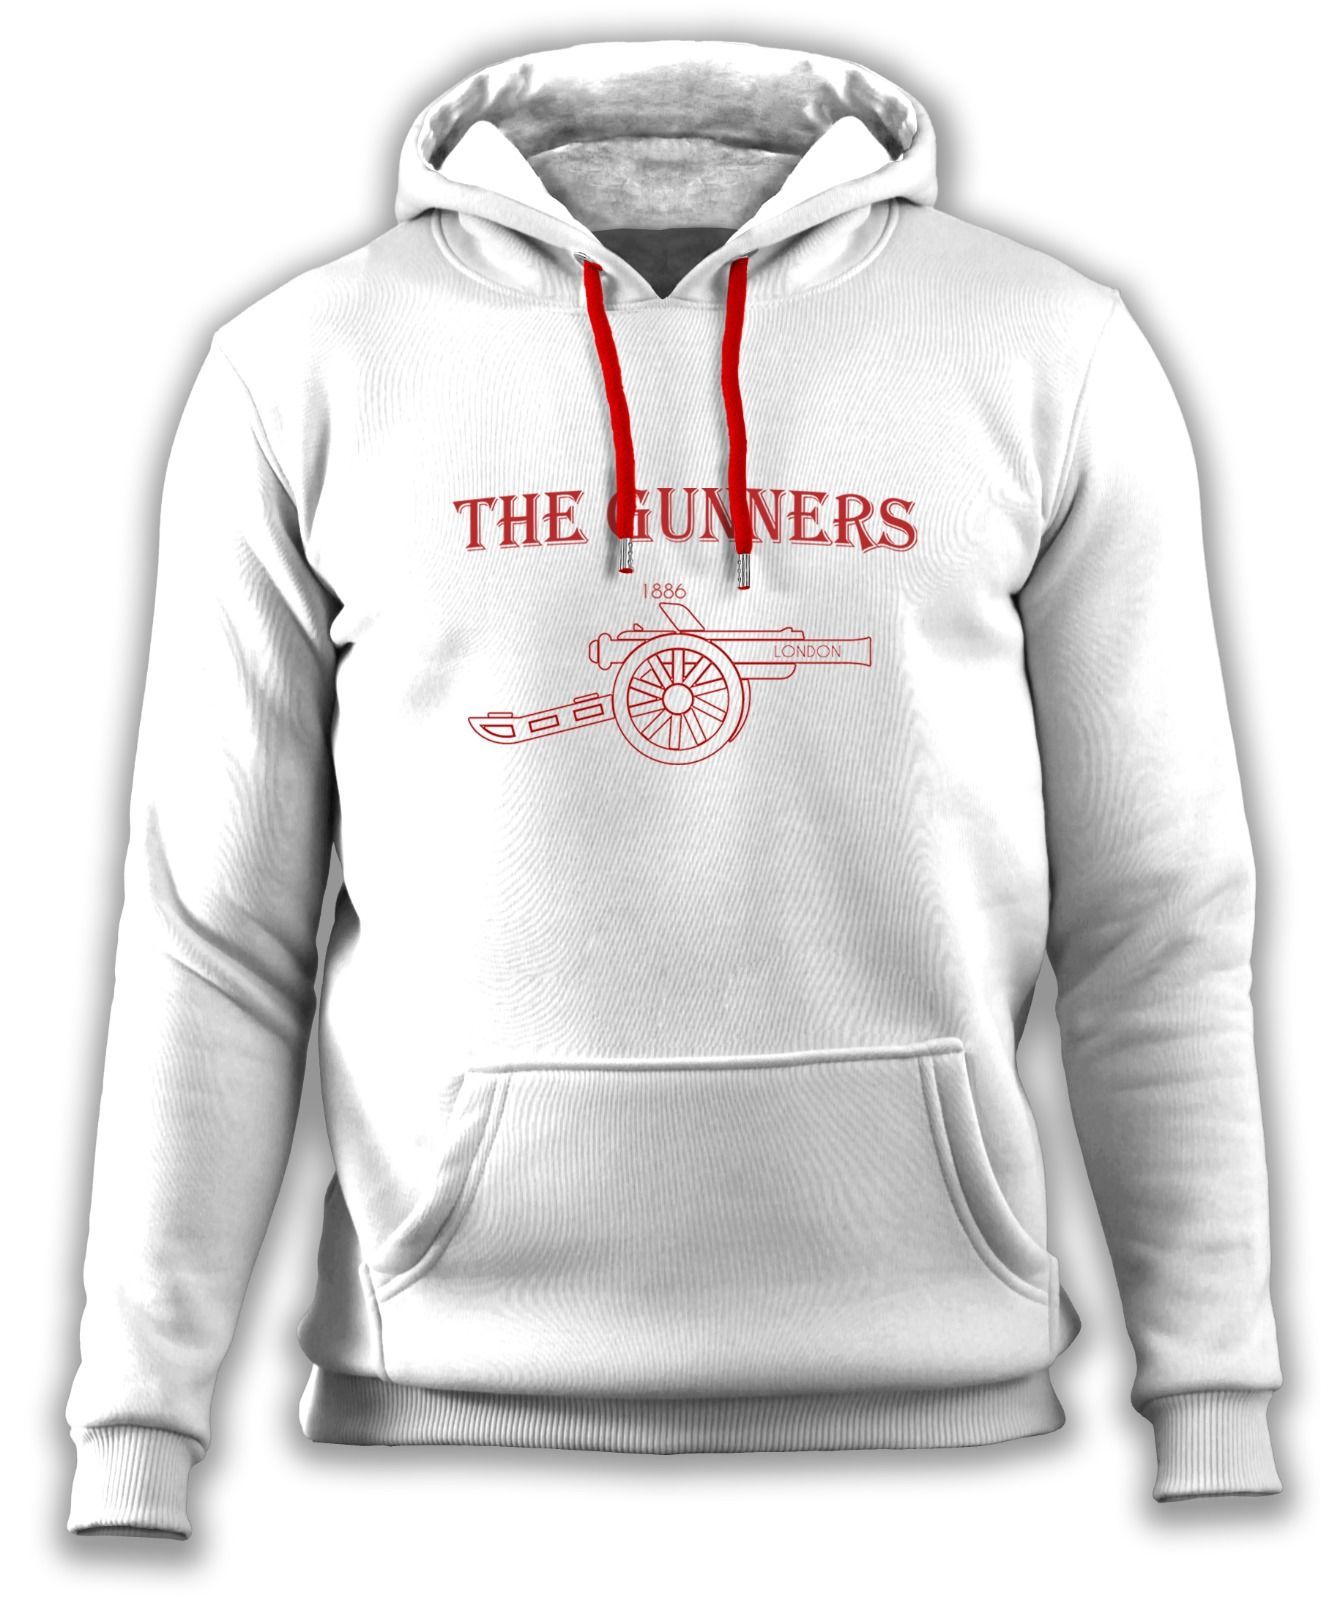 Arsenal 'The Gunners' - Sweatshirt